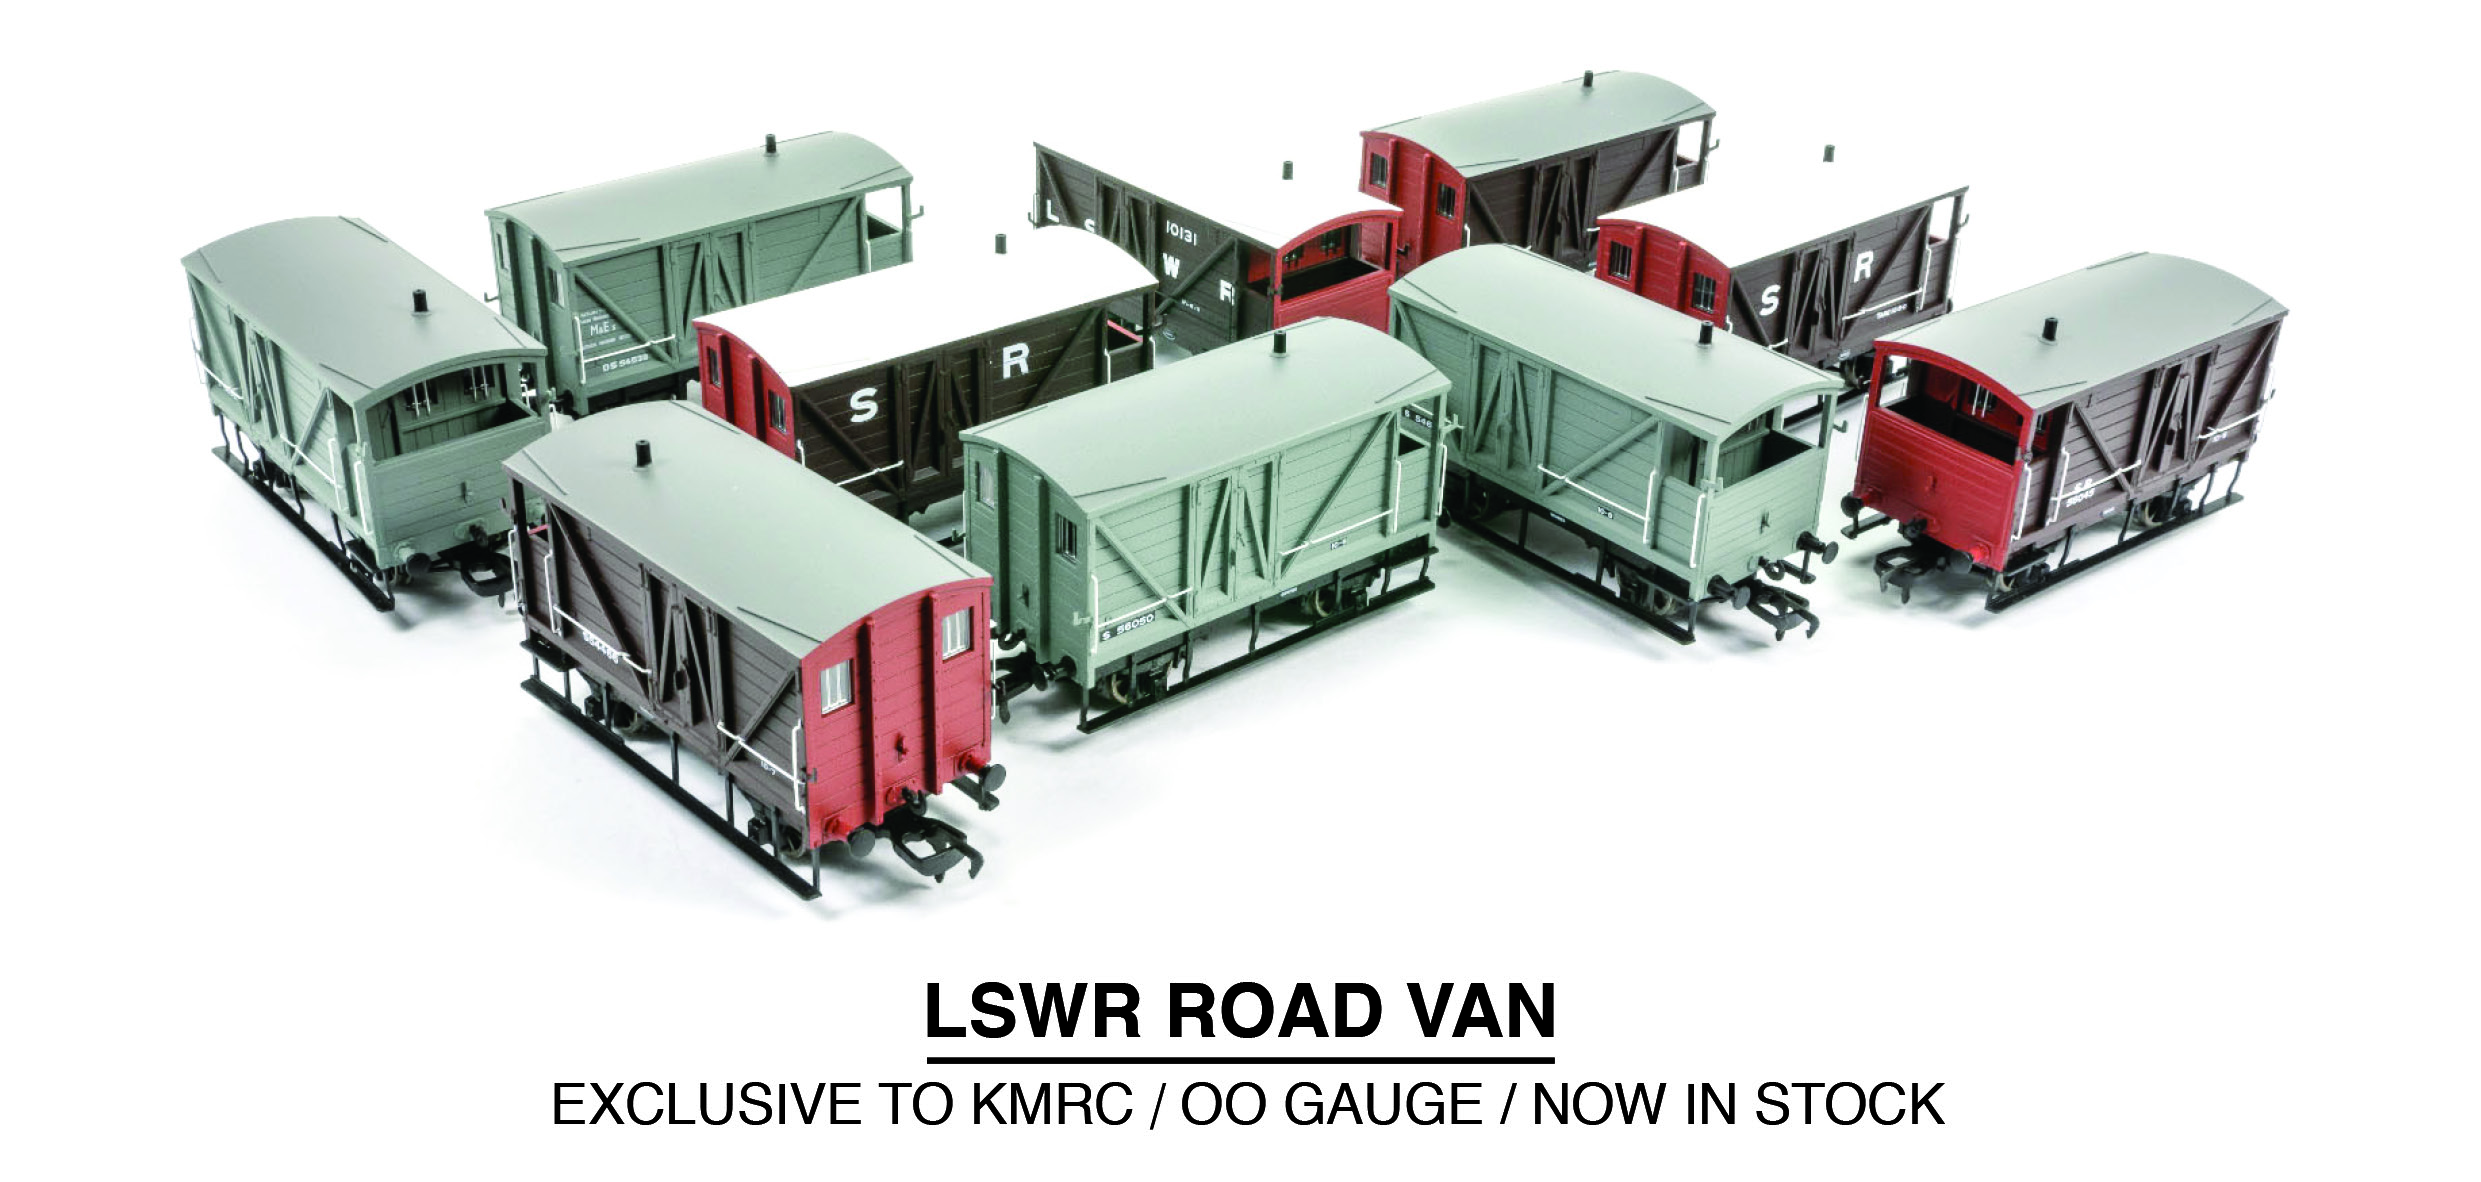 LSWR Road Van Image